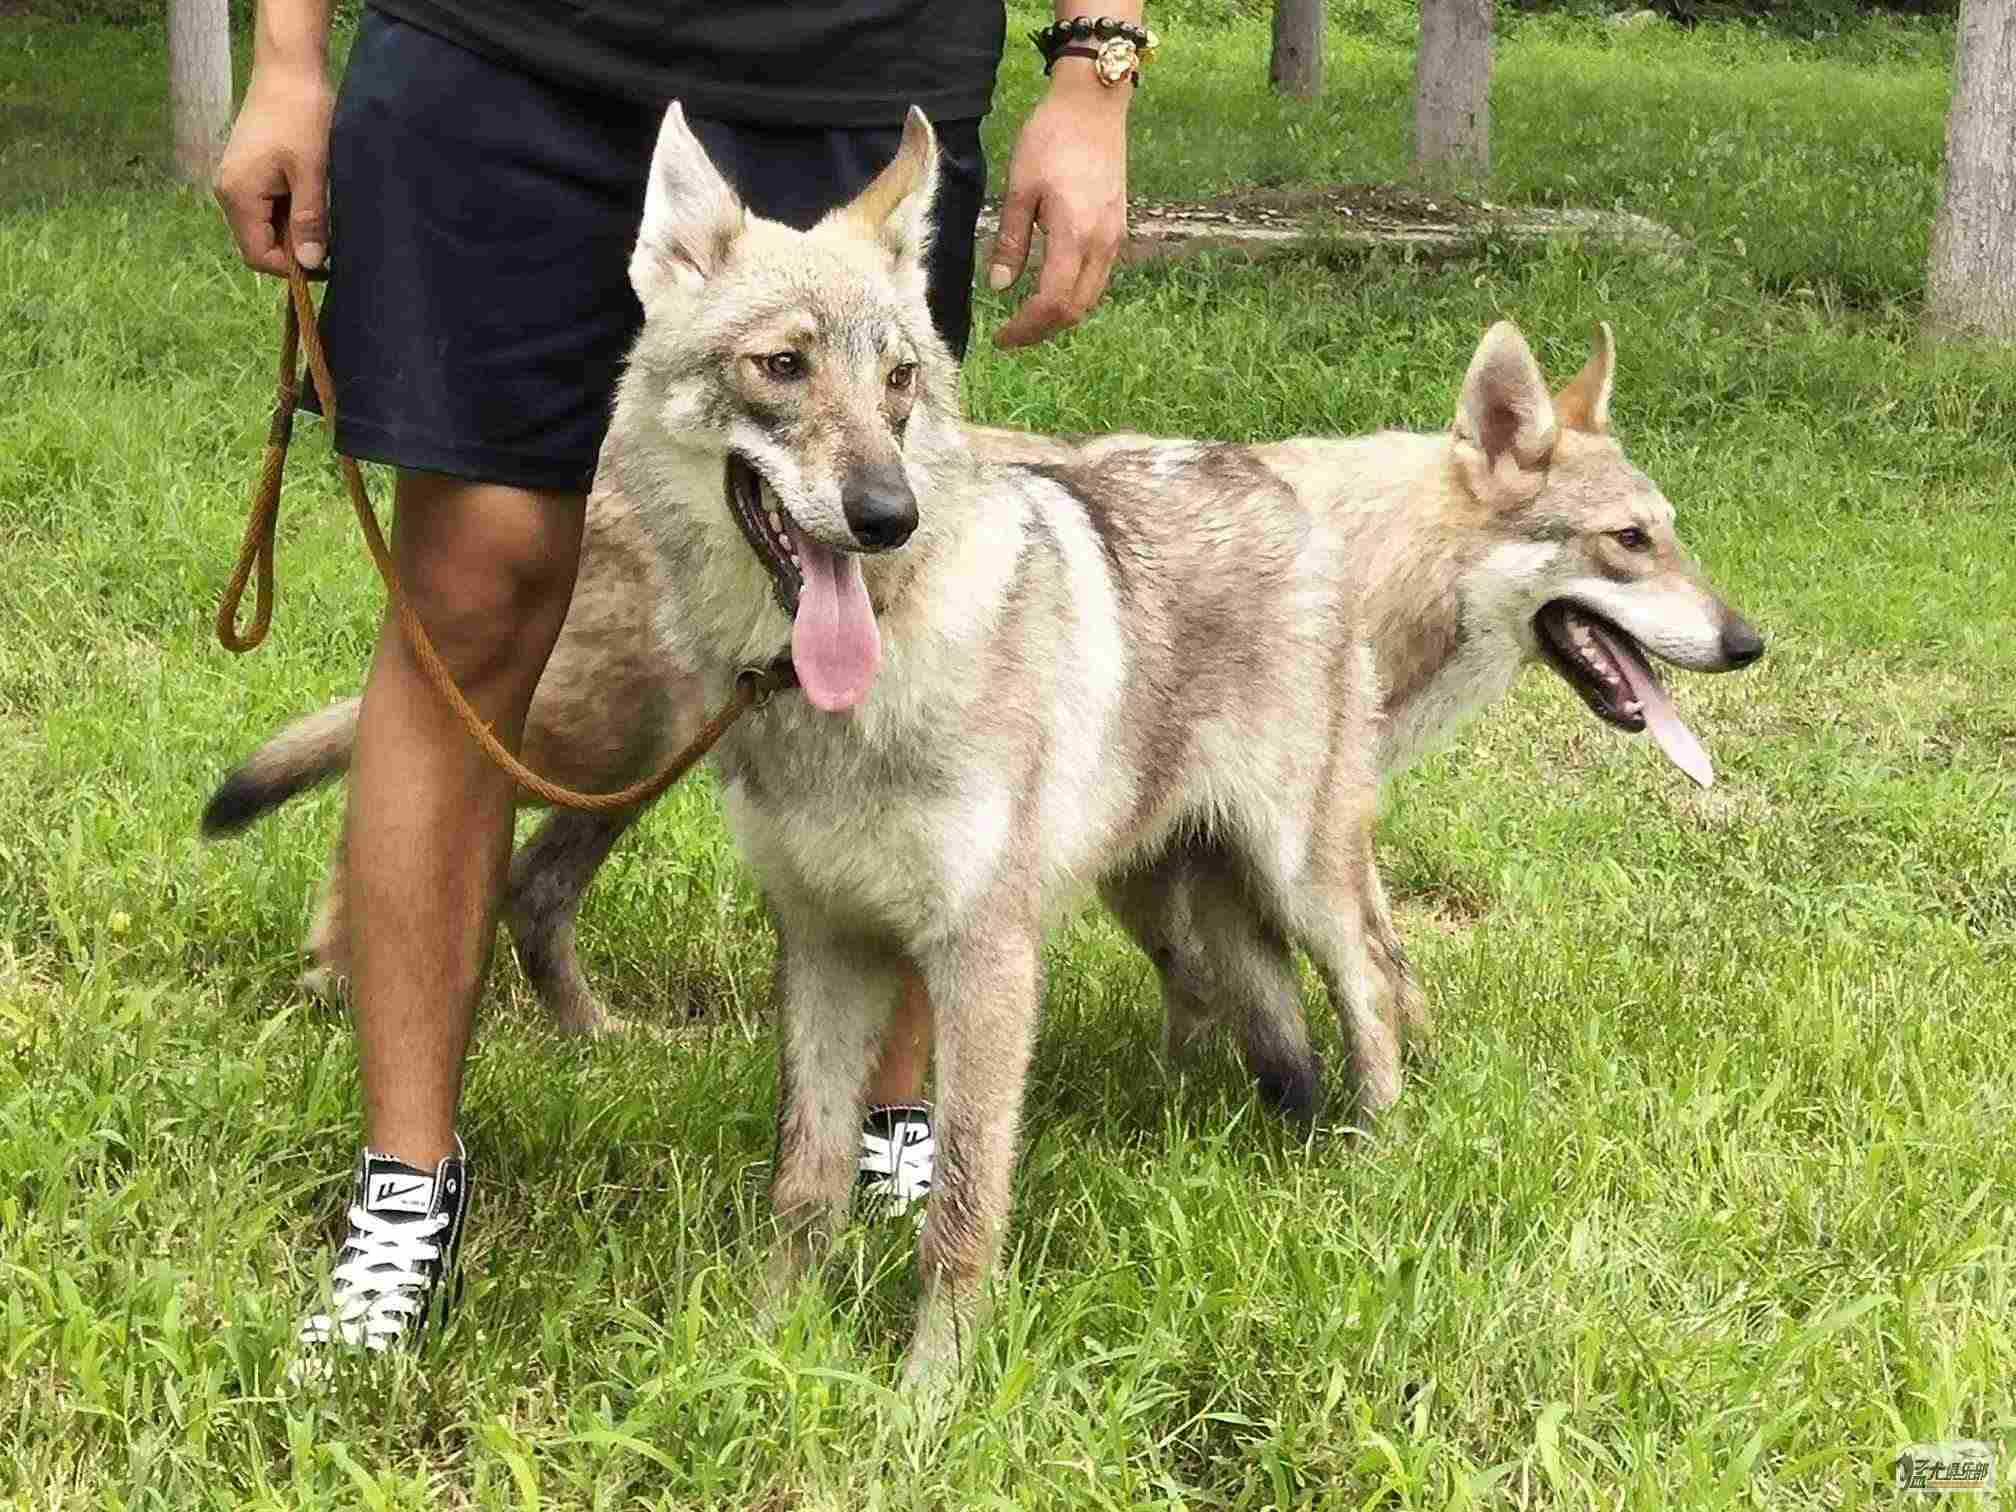 Saarloos猎狼犬小狗与花的 库存图片. 图片 包括有 其它, 灰色, 服从, 宠物, 家谱, 似犬 - 122746341